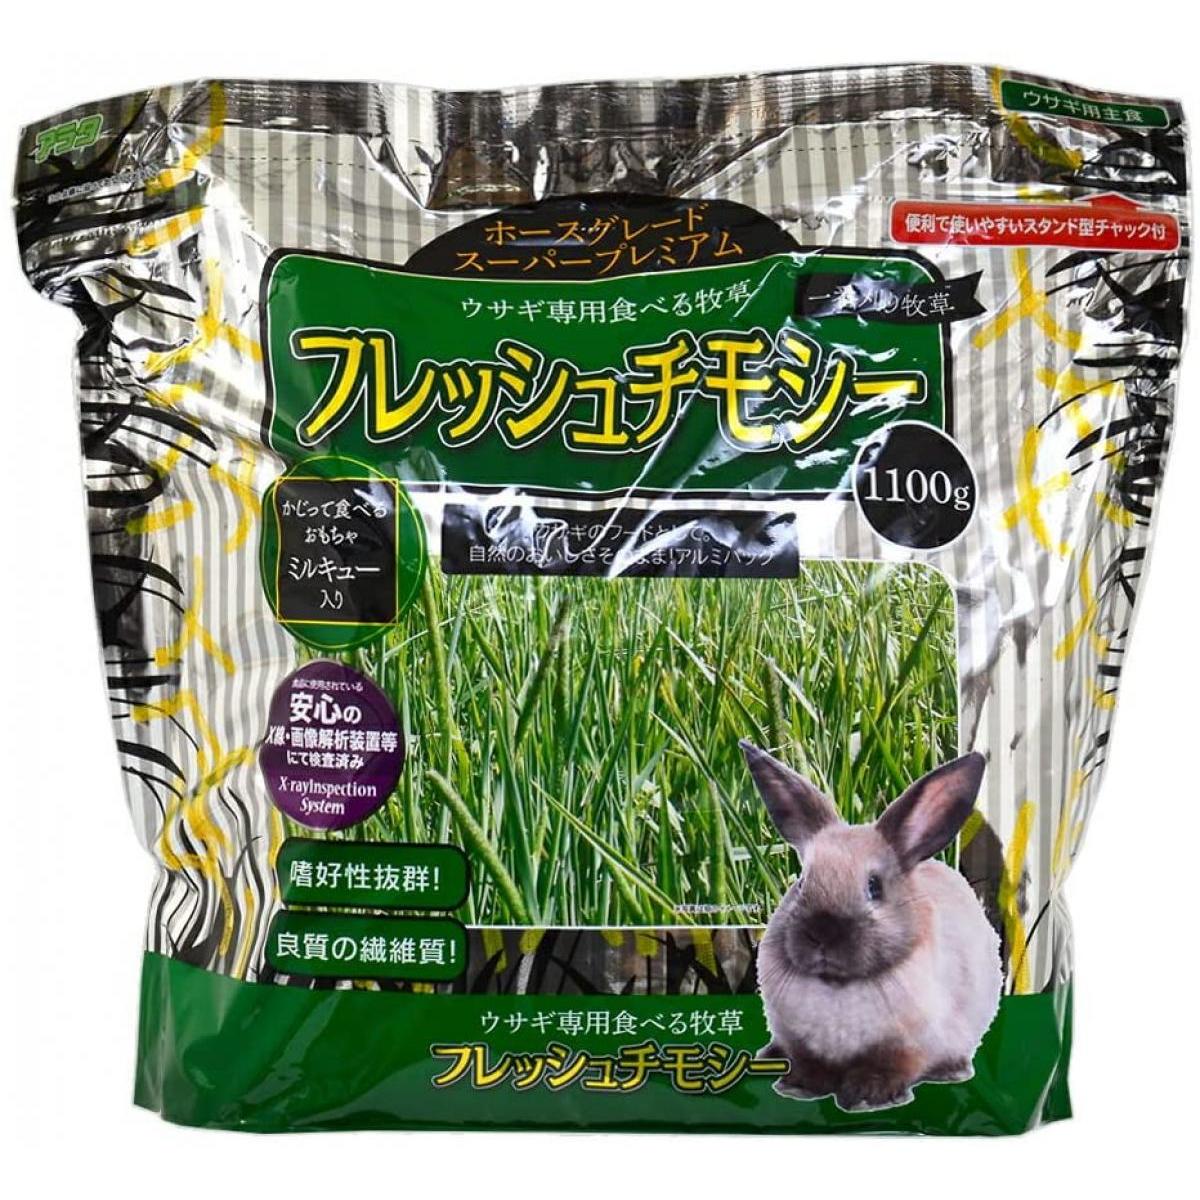 アラタ ウサギ専用食べる牧草 フレッシュチモシー (1100g) ウサギ用フード エサ